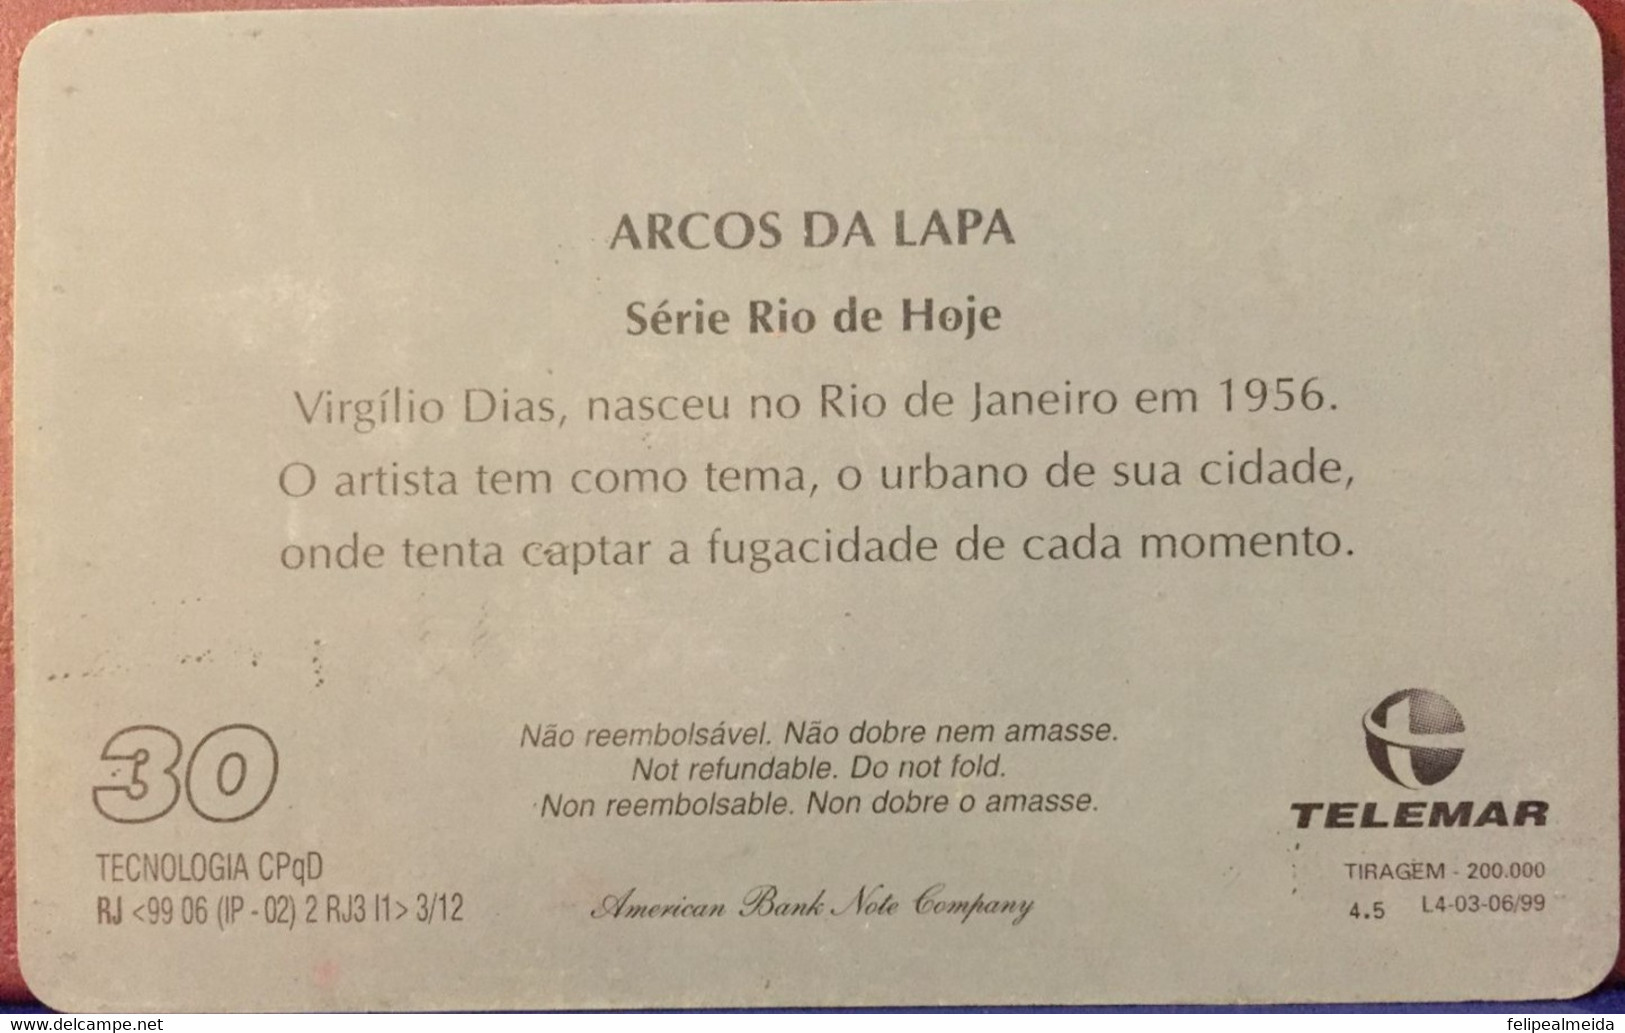 Phone Card Manufactured By Telemar In 1999 - Series Rio Do Hoje - Painter Virgílio Dias - Arcos Da Lapa - Peinture